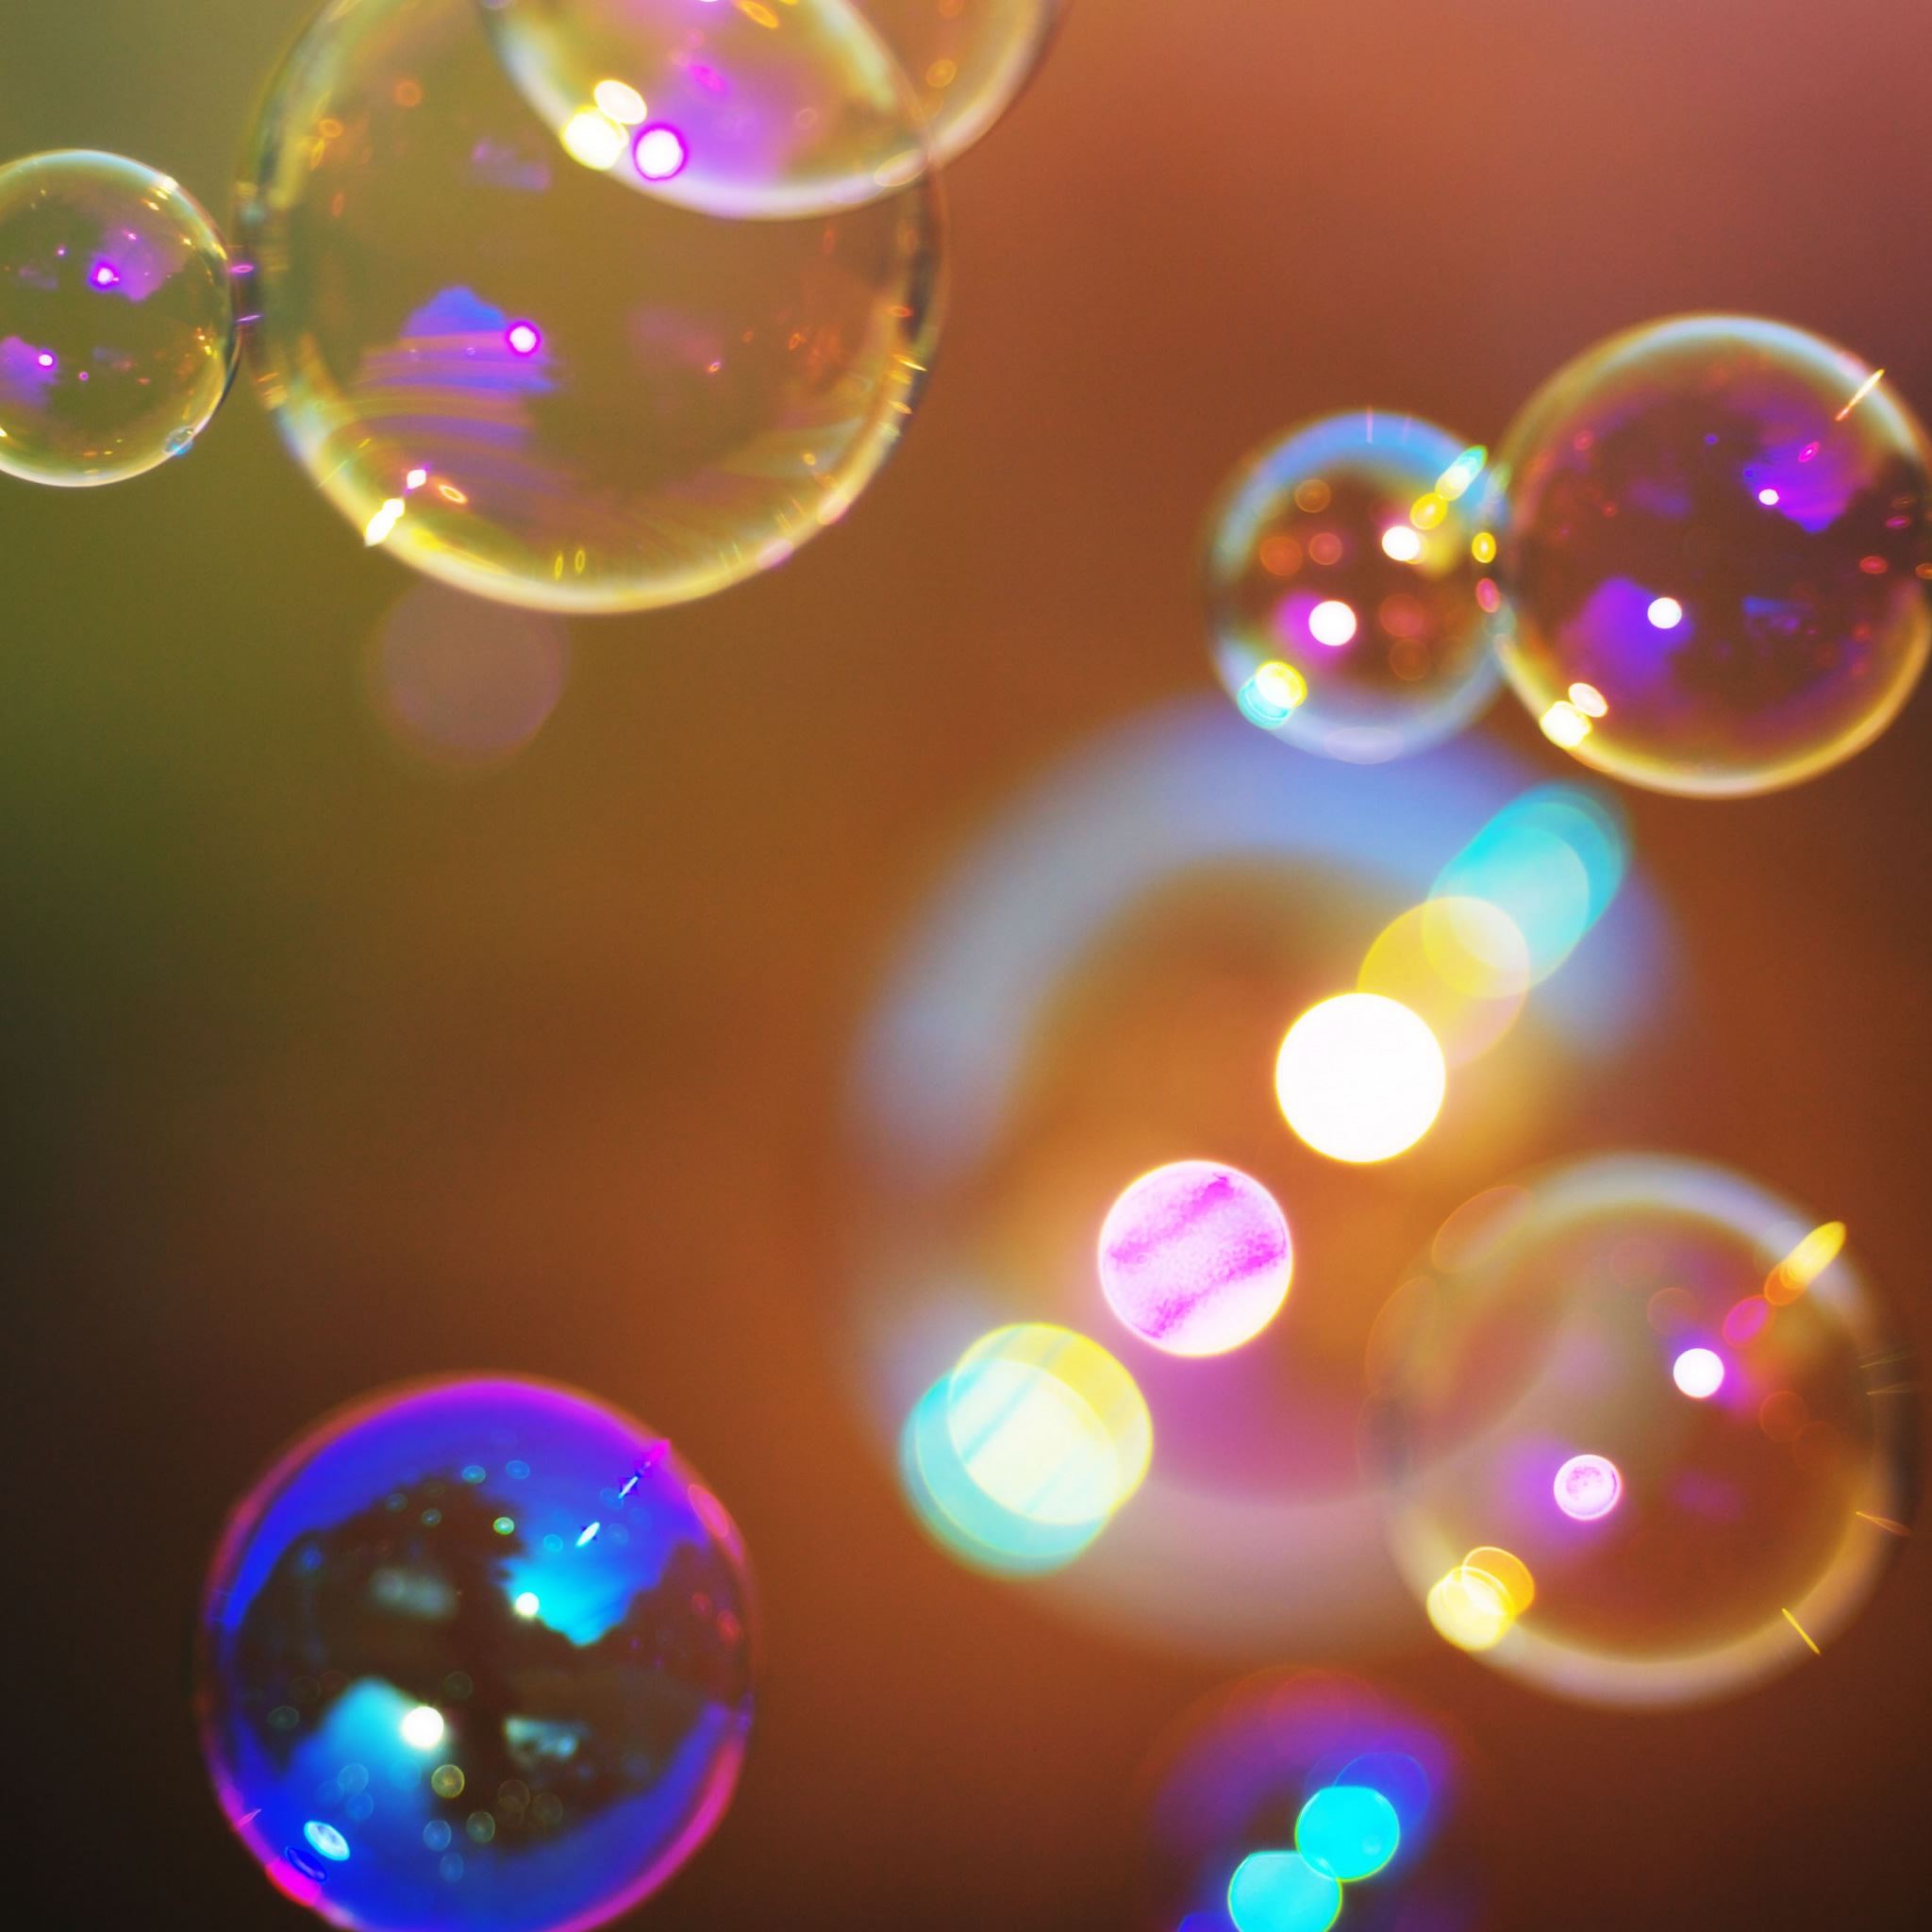 Soap Bubbles 2 iPad Air wallpaper 